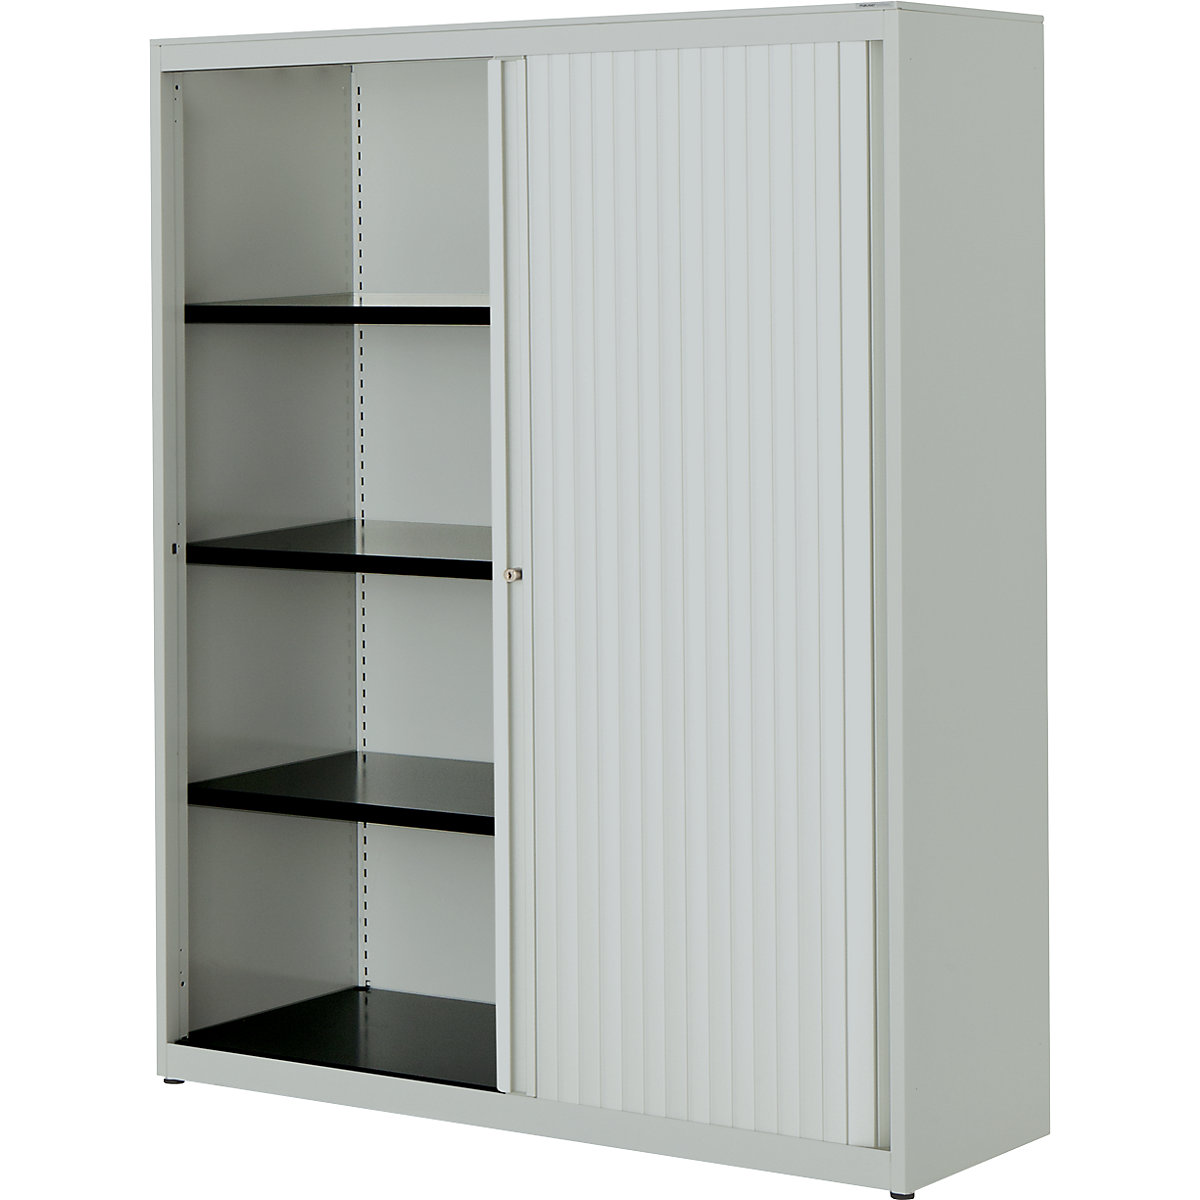 Horizontal roller shutter cupboard – mauser, HxWxD 1516 x 1200 x 432 mm, steel plate, 3 shelves, light grey / light grey / light grey-2